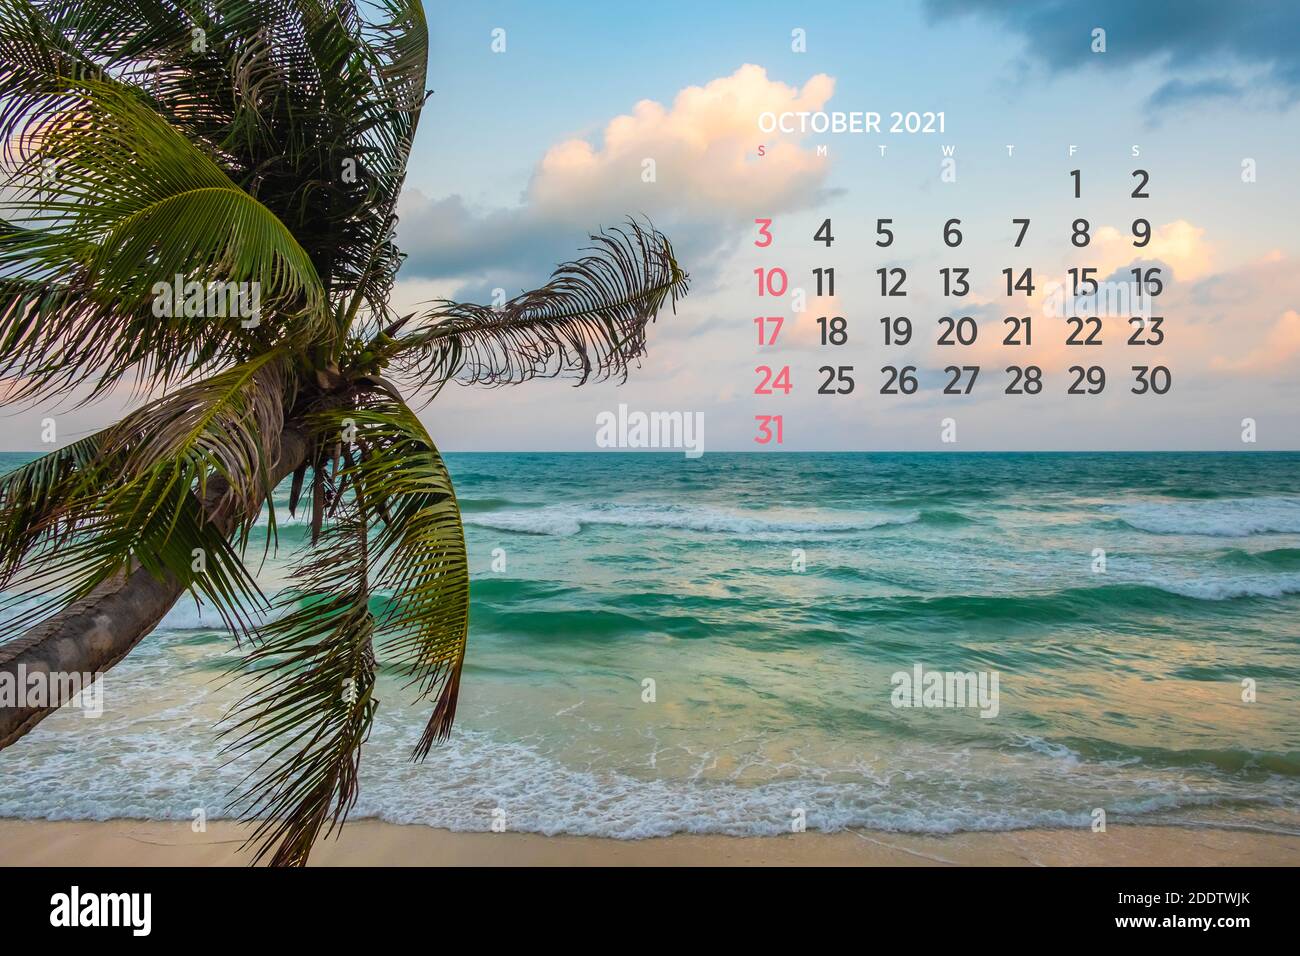 Calendar October 2021. Sea, ocean, beach, tropical, nature theme. A2. 60 x 40 cm. 15.75 x 23.62 inches Stock Photo